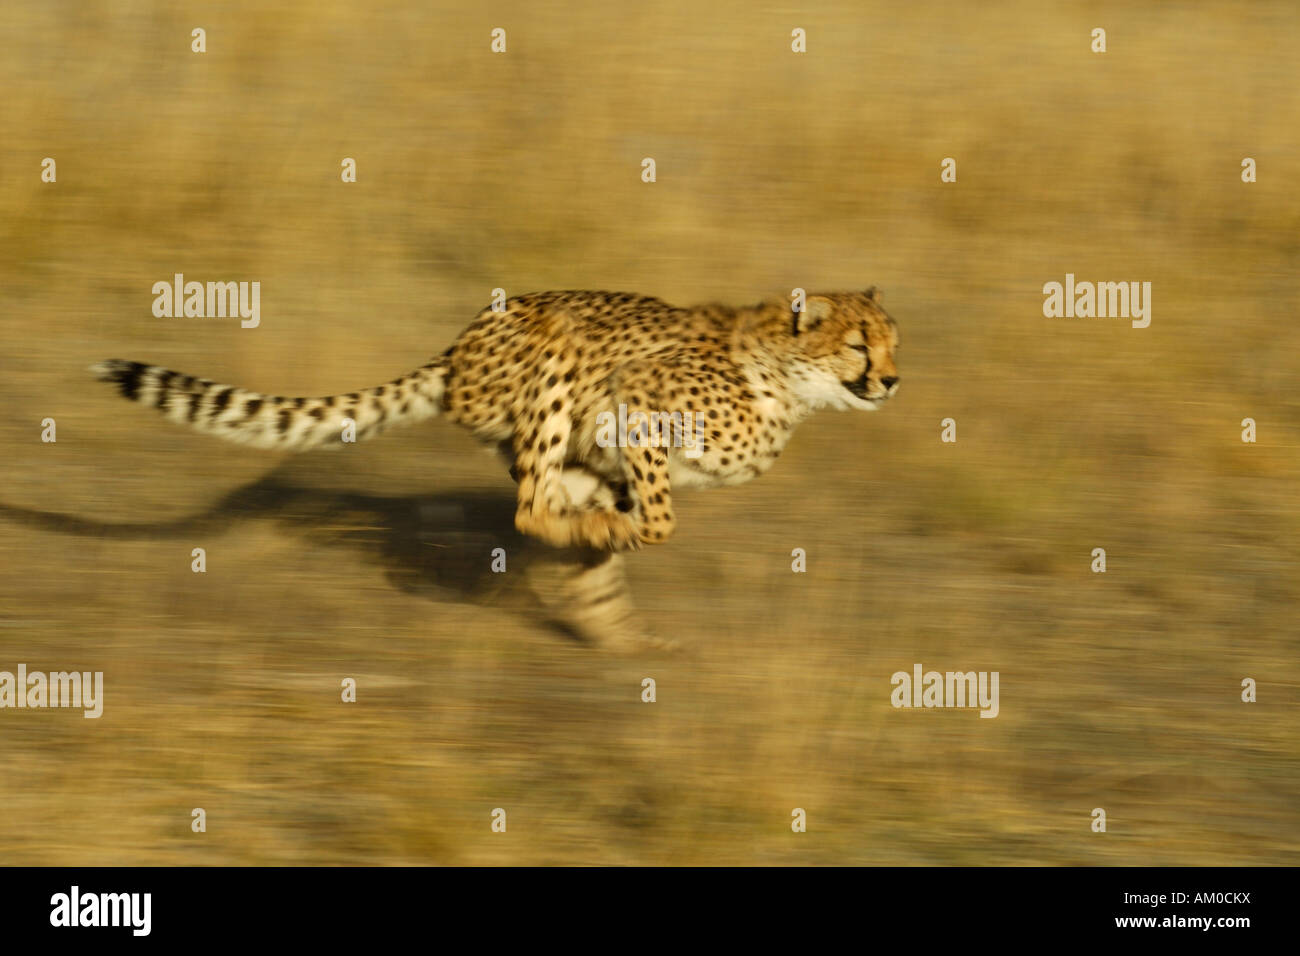 Cheetah (Acinonyx jubatus), running Stock Photo